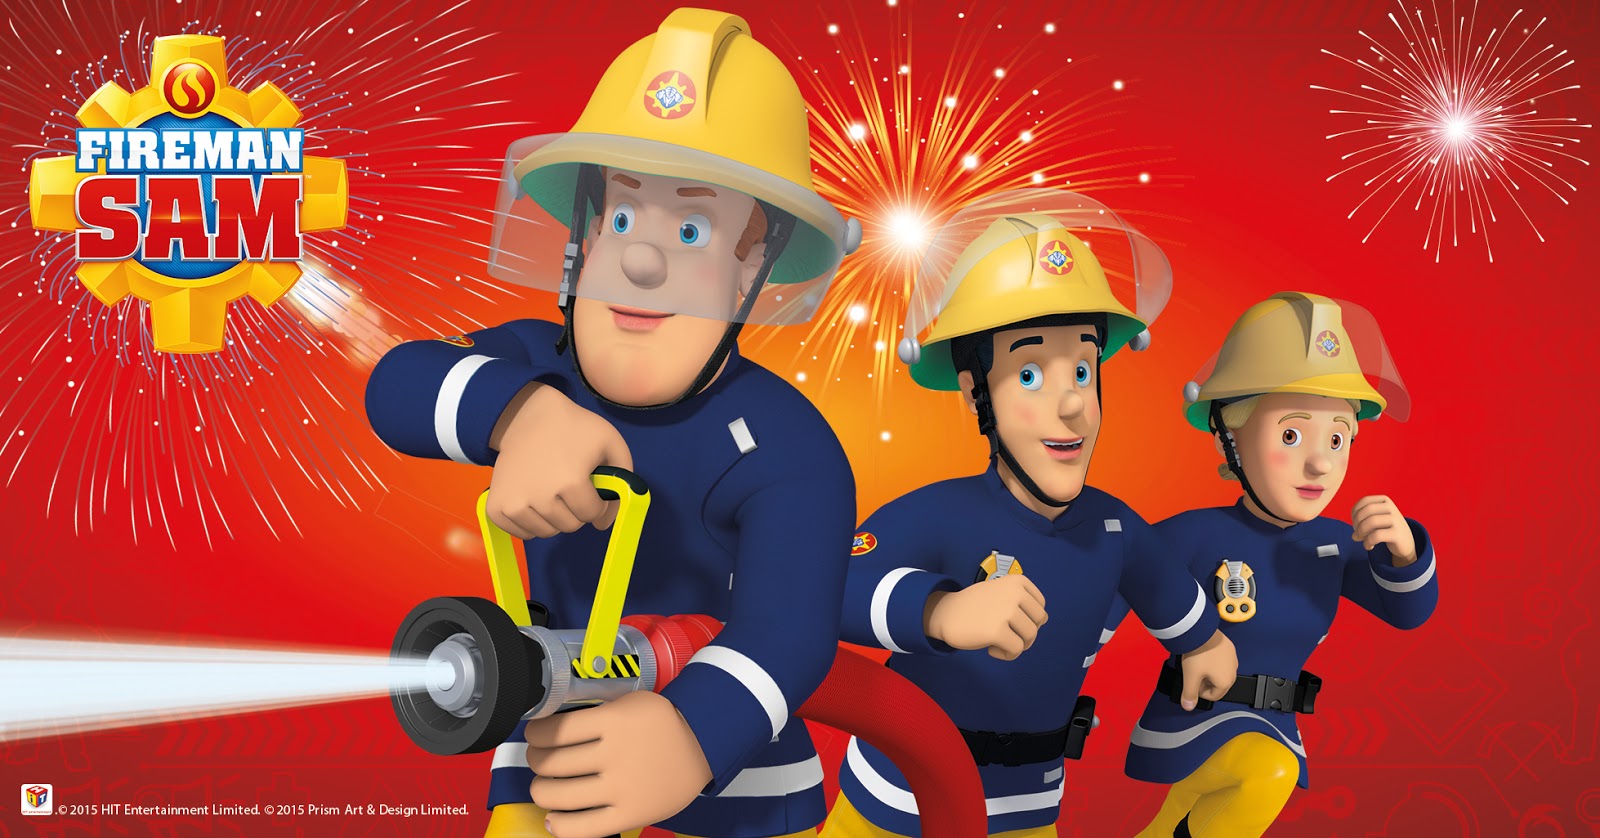 FIREMAN SAM’S SAFETY MONTH: FIREWORKS AND BONFIRES